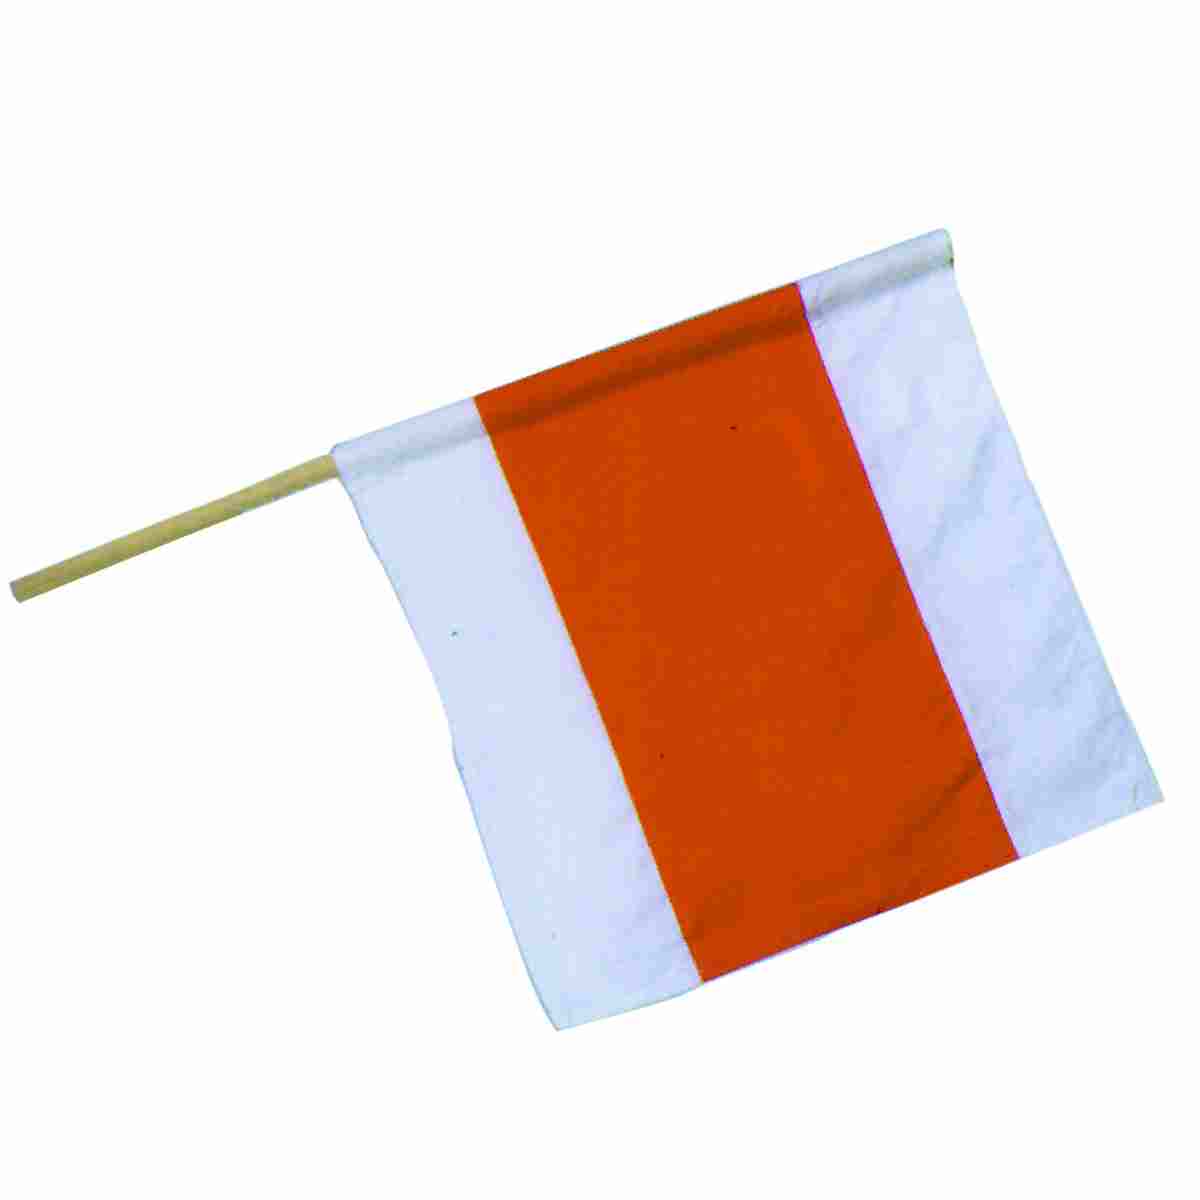 Warnflagge, Größe 50 x 50 cm weiß/orange/weiß, Holzstiel Ø 21mm, 80cm